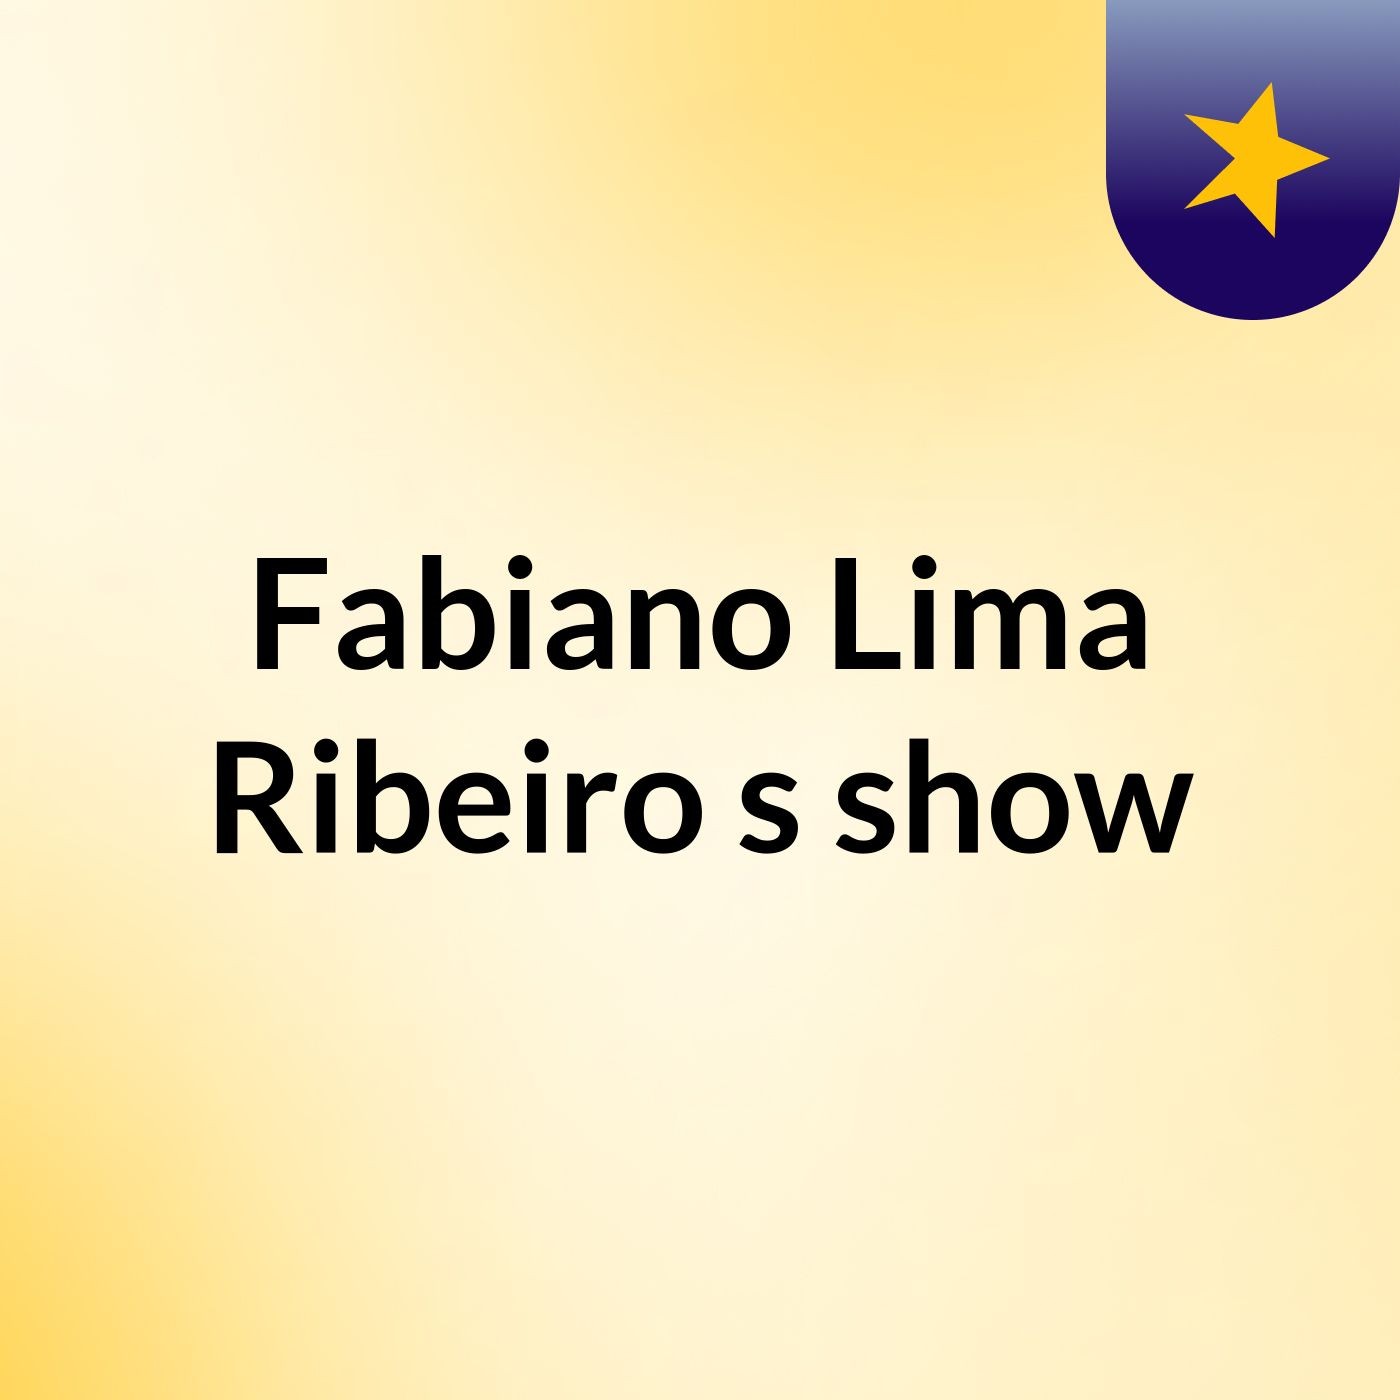 Fabiano Lima Ribeiro's show